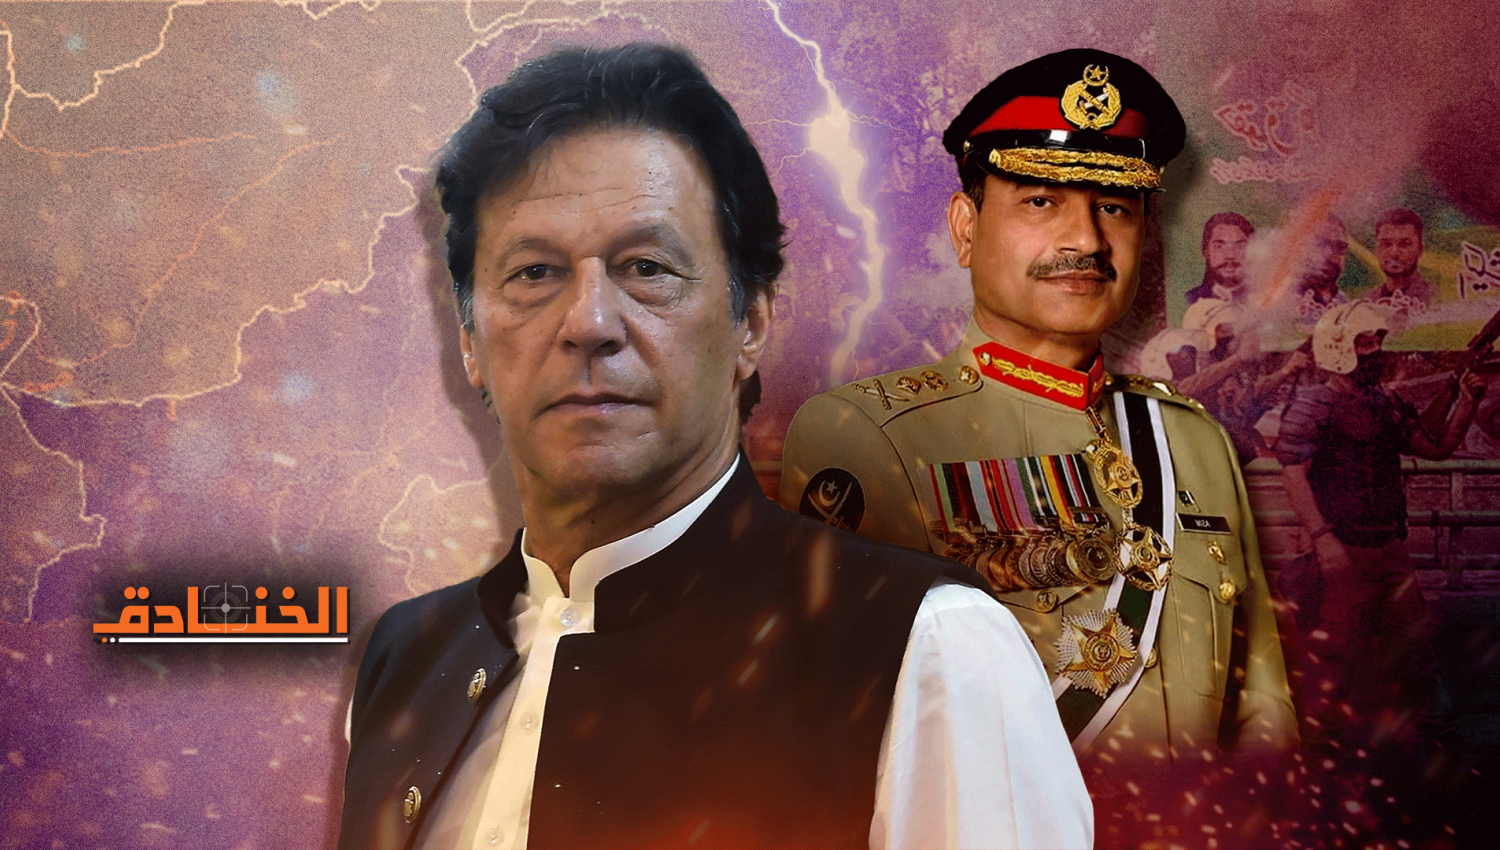 عمران خان يواجه الحكومة والجيش والقضاء معاً.. من سينتصر؟